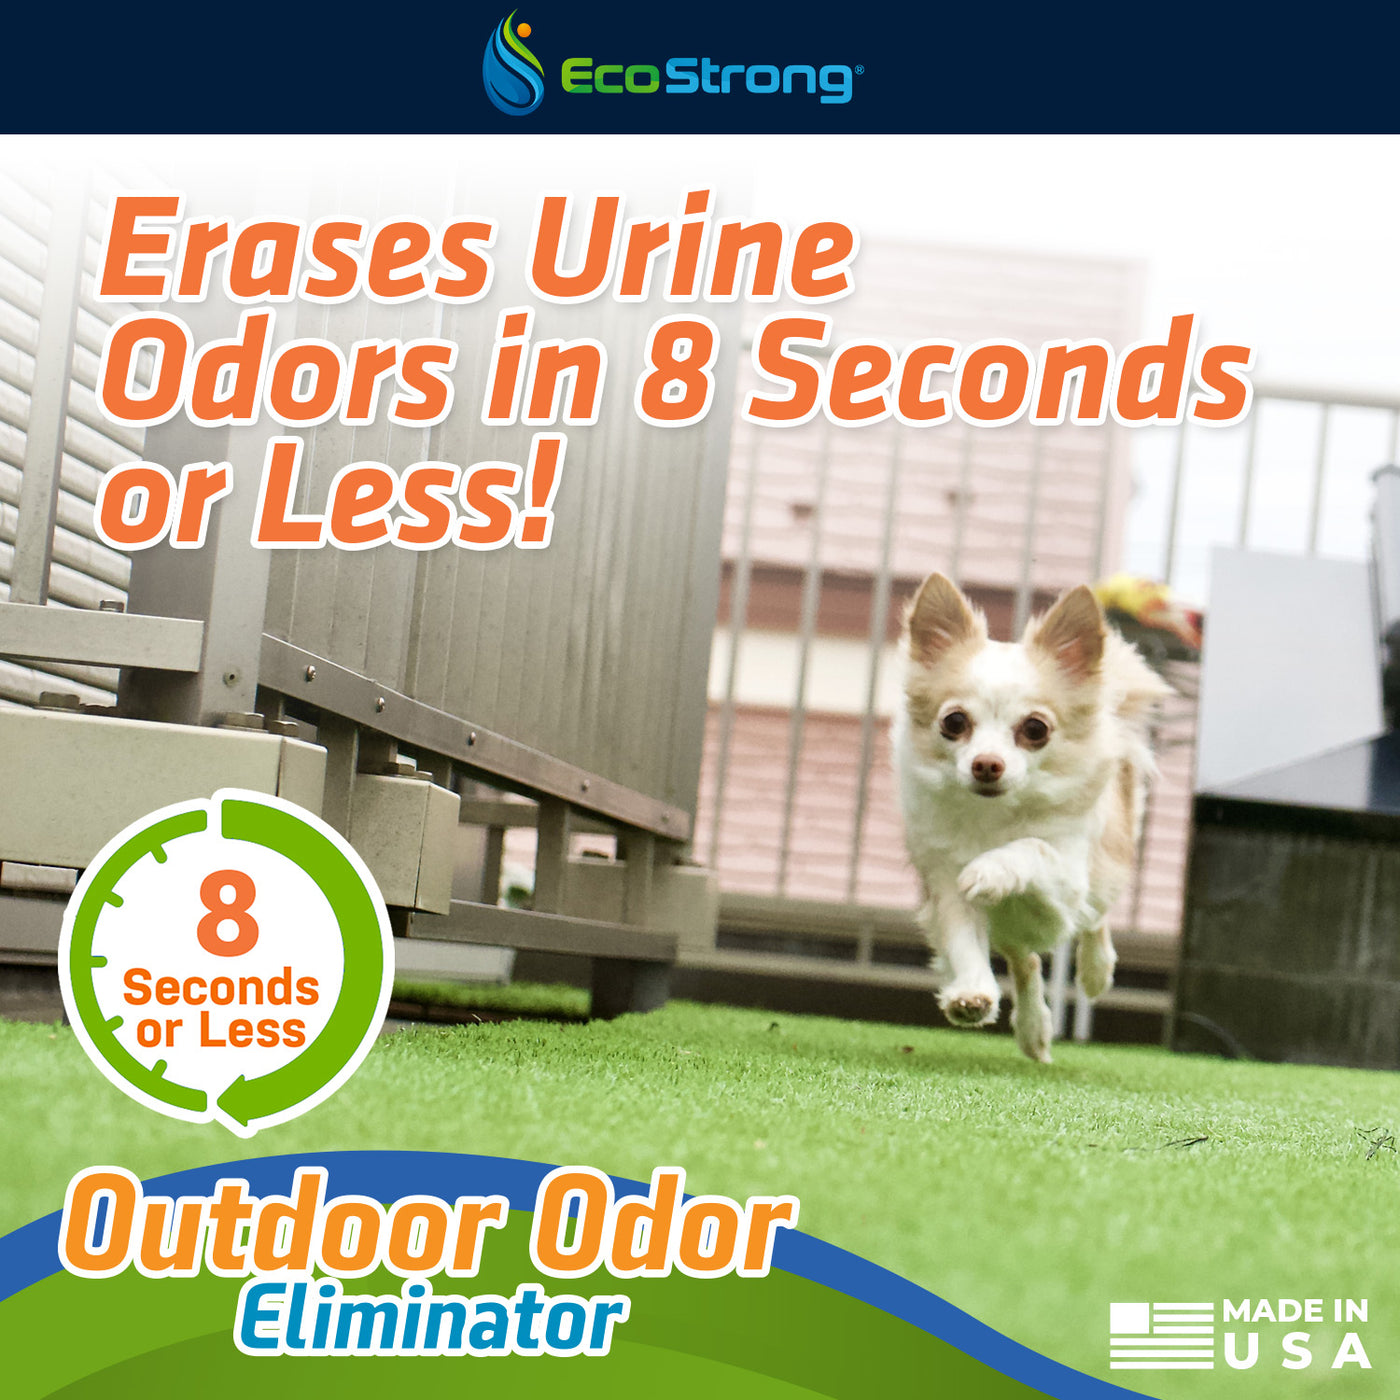 EcoStrong Outdoor Odor Eliminator 1 gallon and 32 oz sprayer #size_32-oz-sprayer-bottle-and-1-gallon-refill